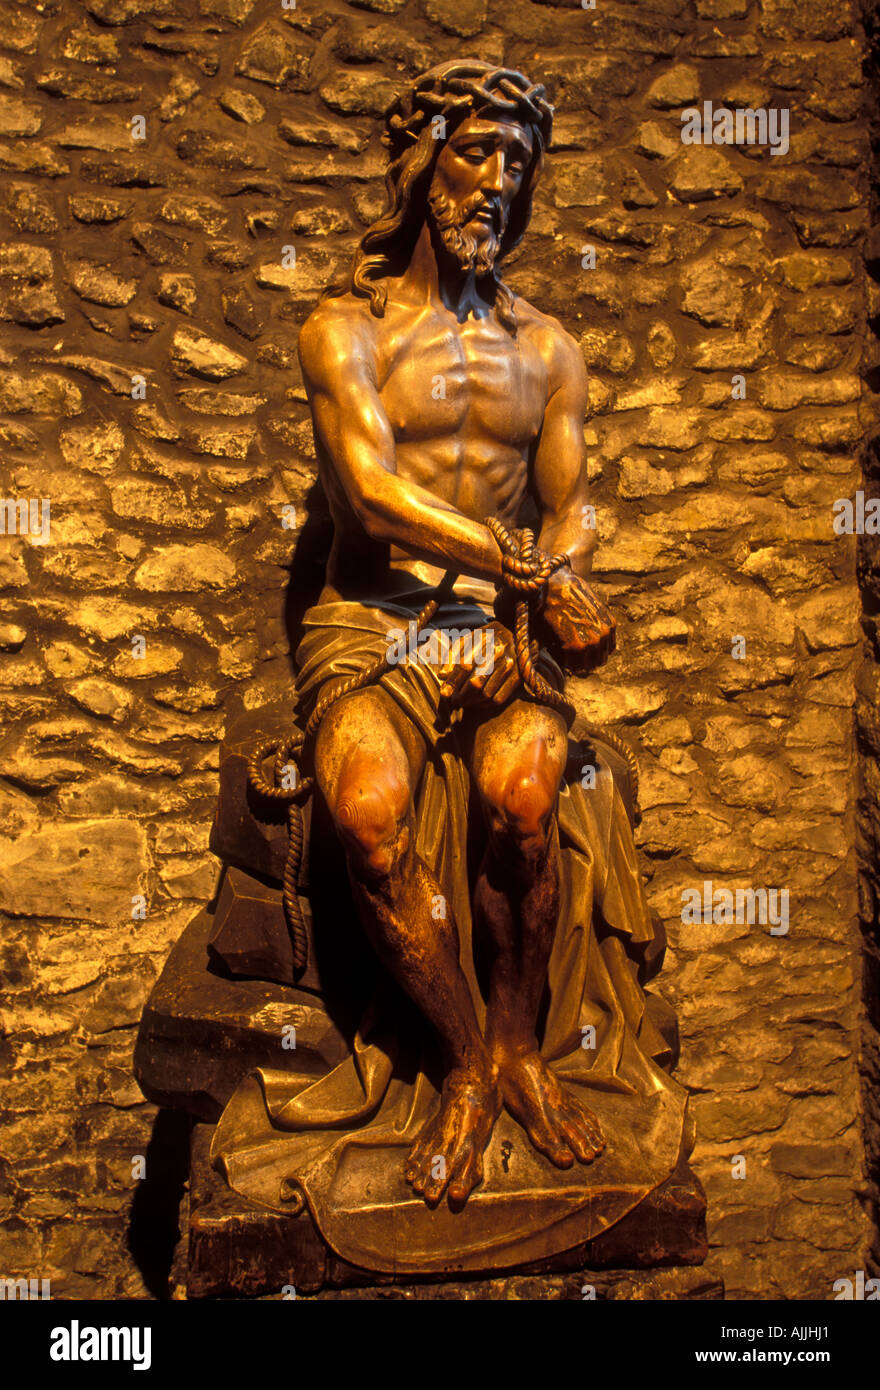 Jésus Christ, Fils de Dieu, Christ image, l'image de Jésus Christ, Basilique du Saint-sang, ville de Bruges, Flandre occidentale Province, Belgique Banque D'Images